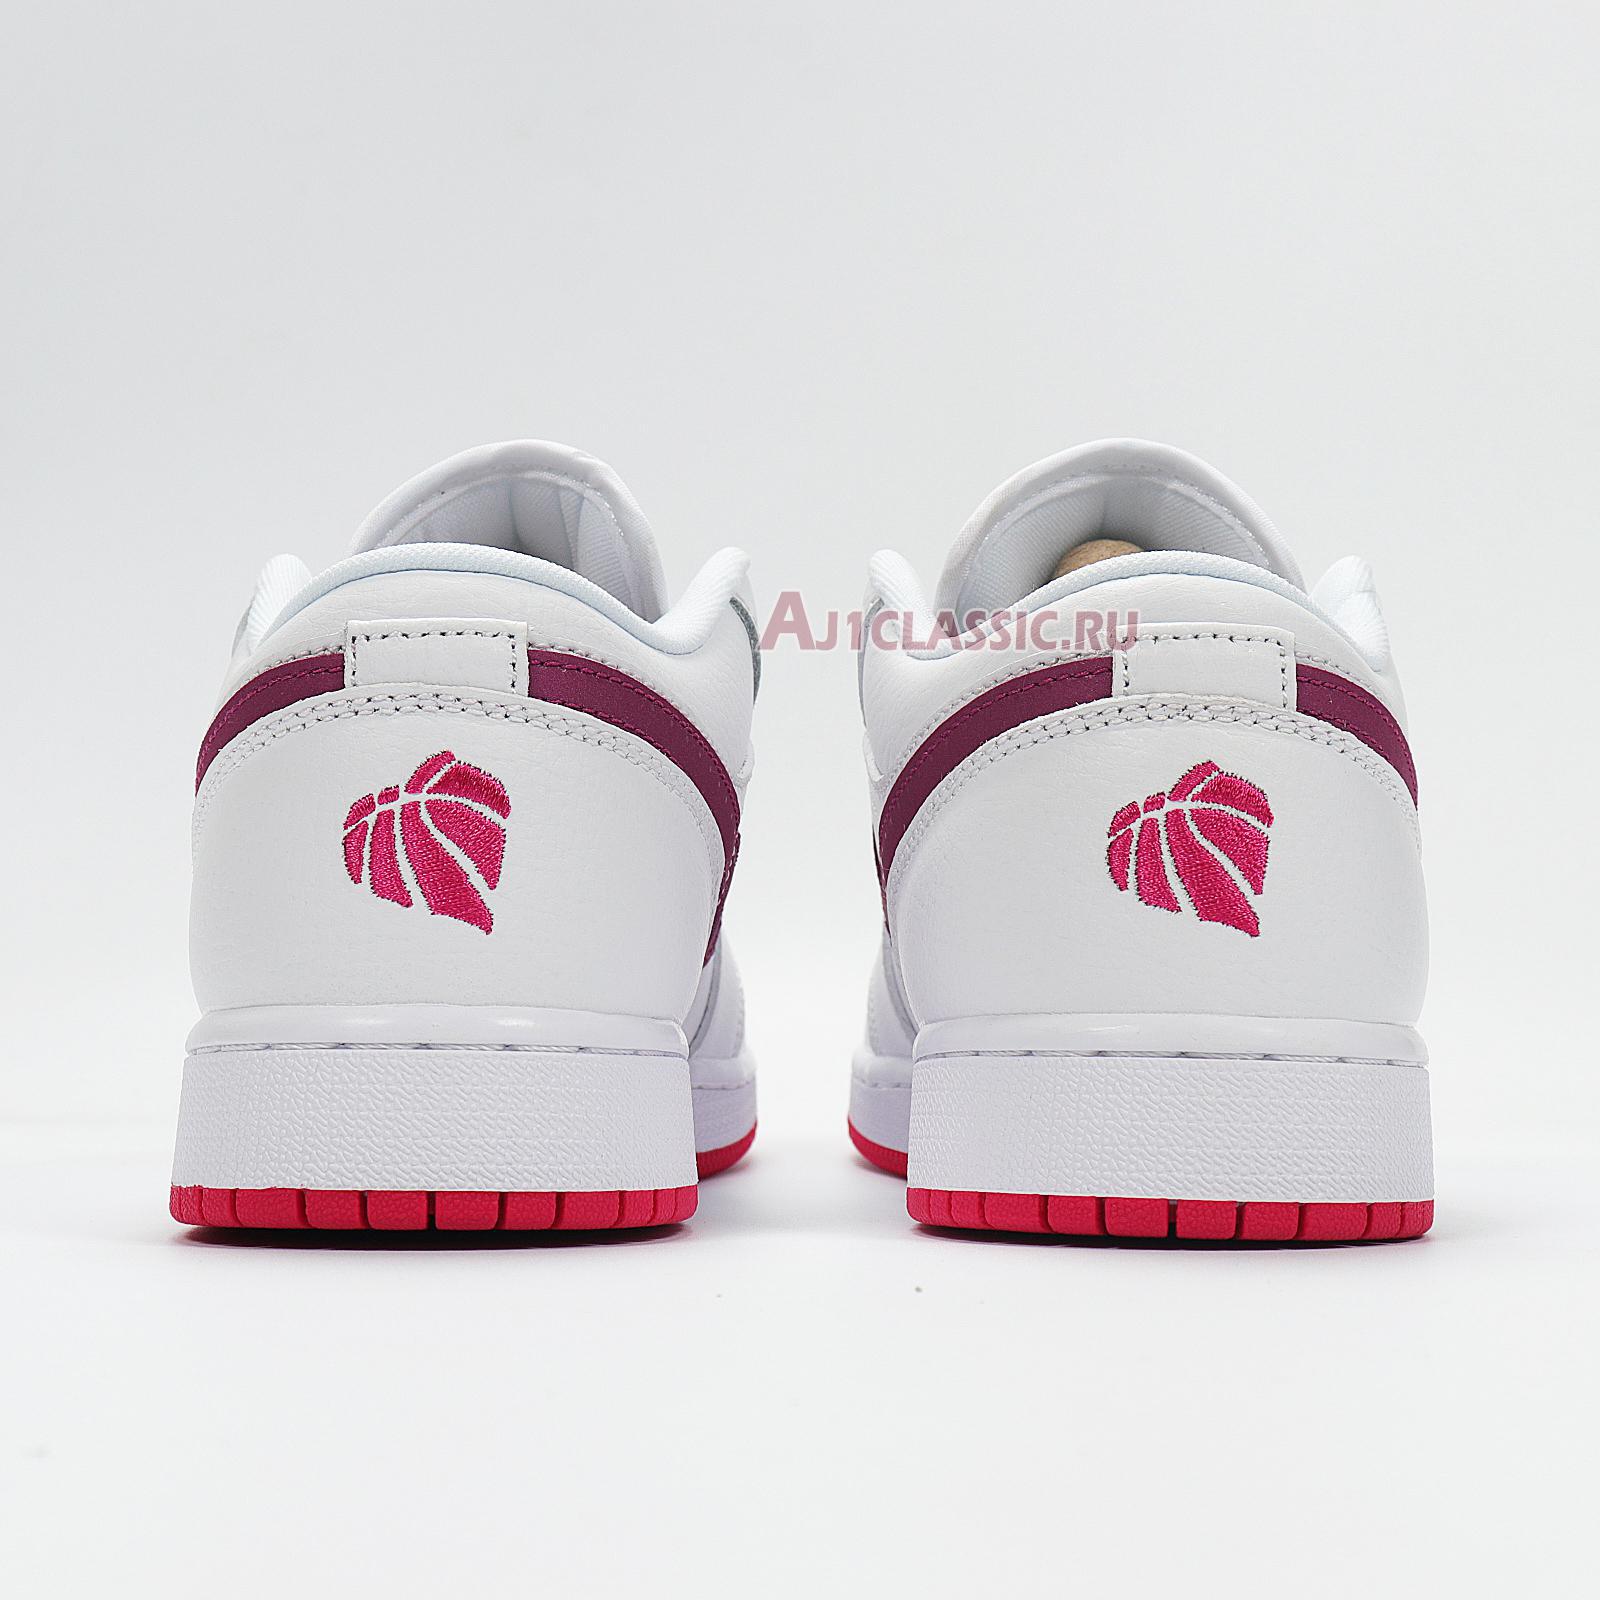 Air Jordan 1 Low "White Berry" 554723-161